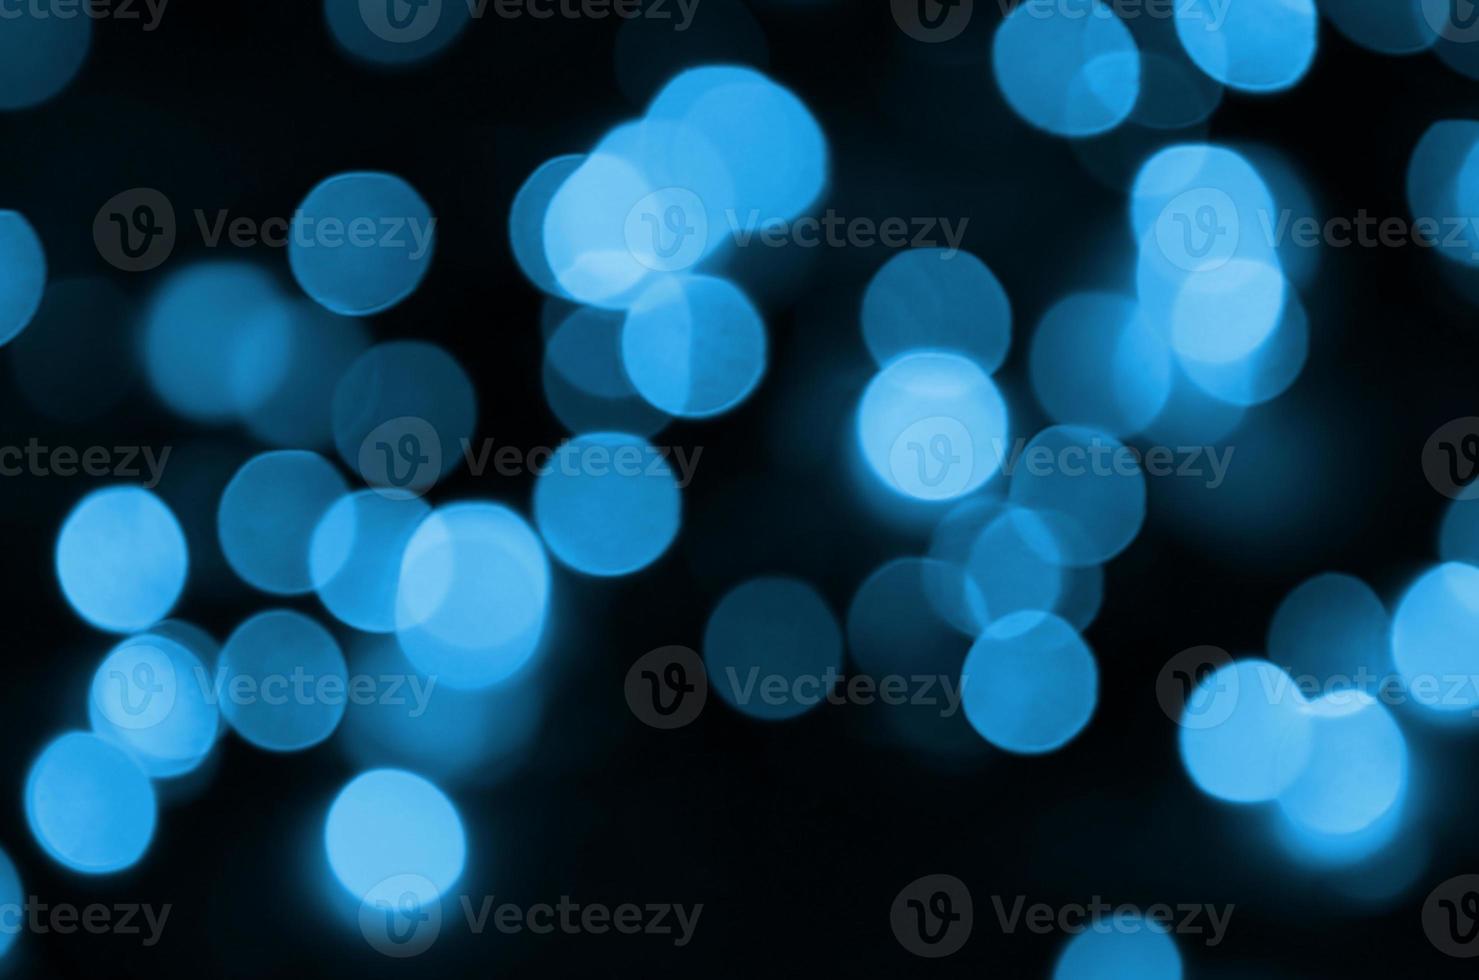 fond abstrait élégant de noël festif bleu avec de nombreuses lumières bokeh. image artistique défocalisé photo